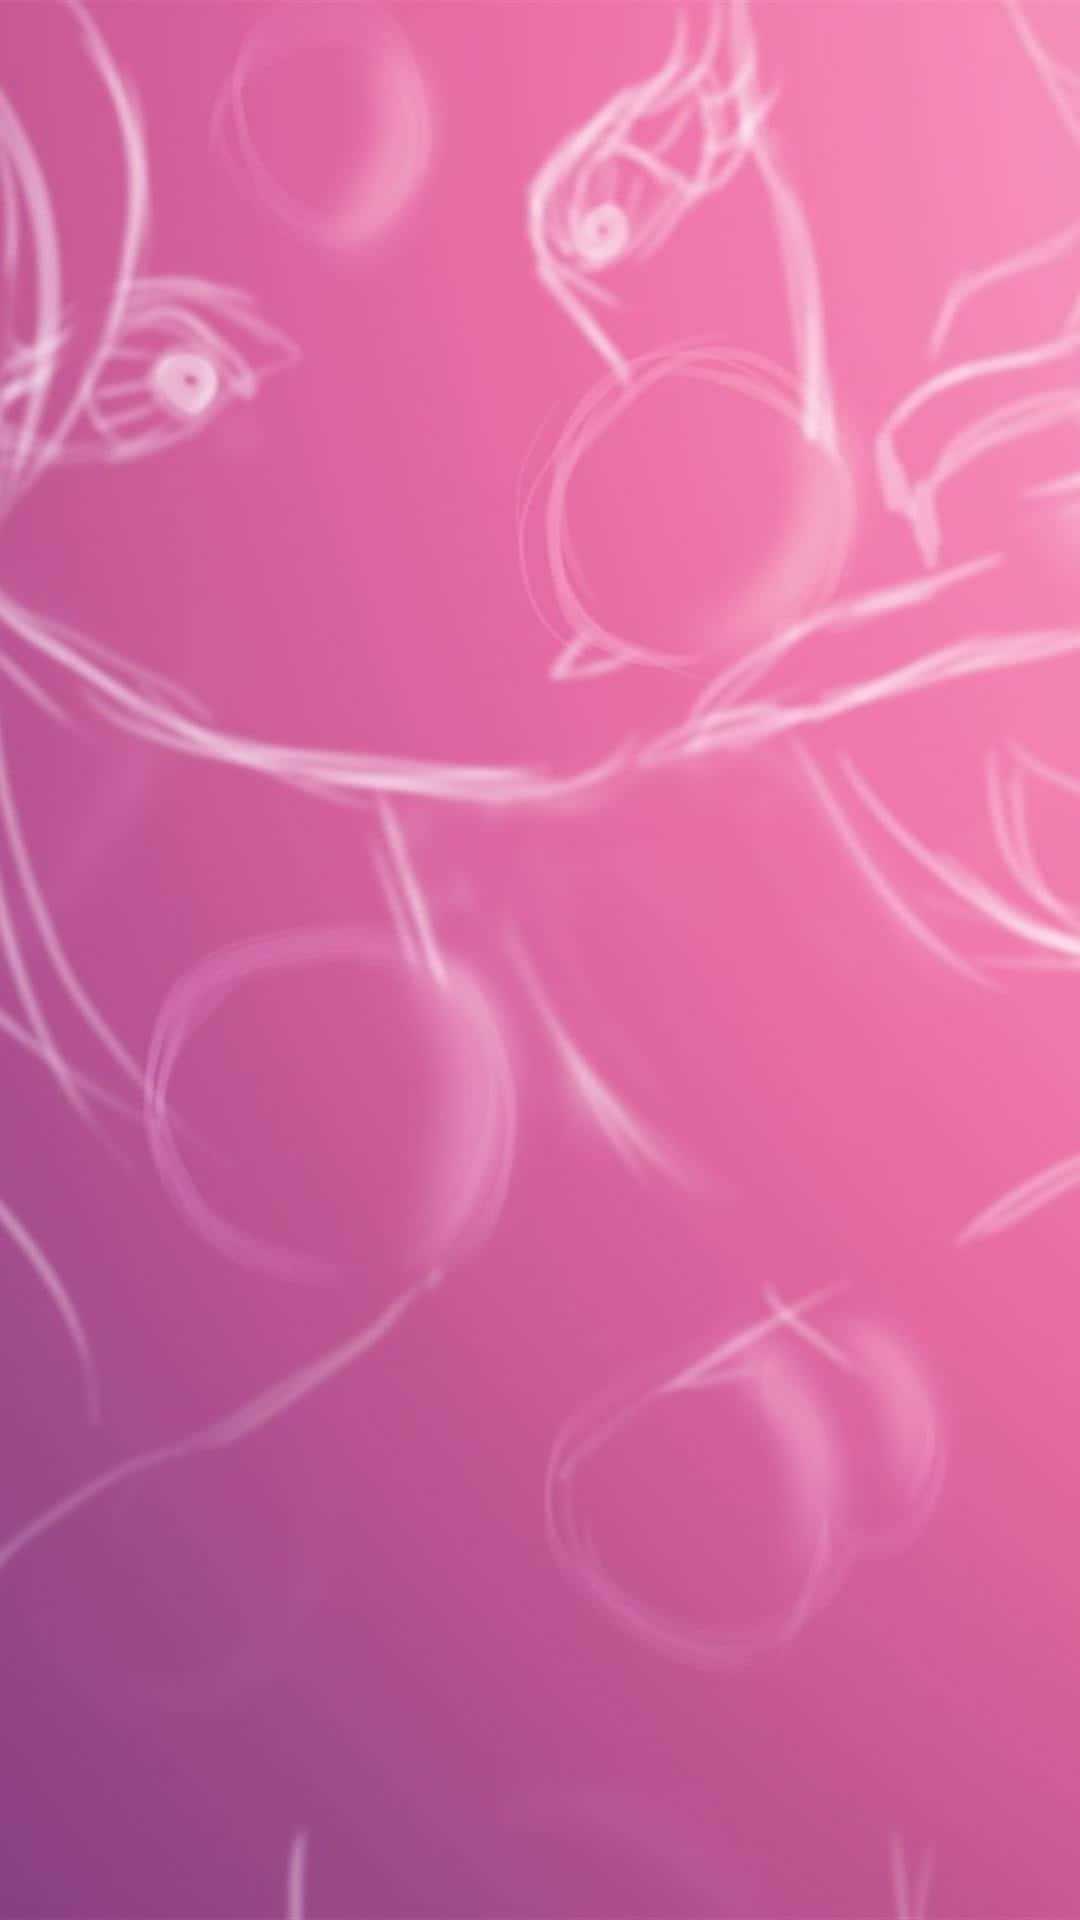 Gør dig selv unik og skil dig ud fra mængden med den smukke lyserøde Iphone-tapet. Wallpaper